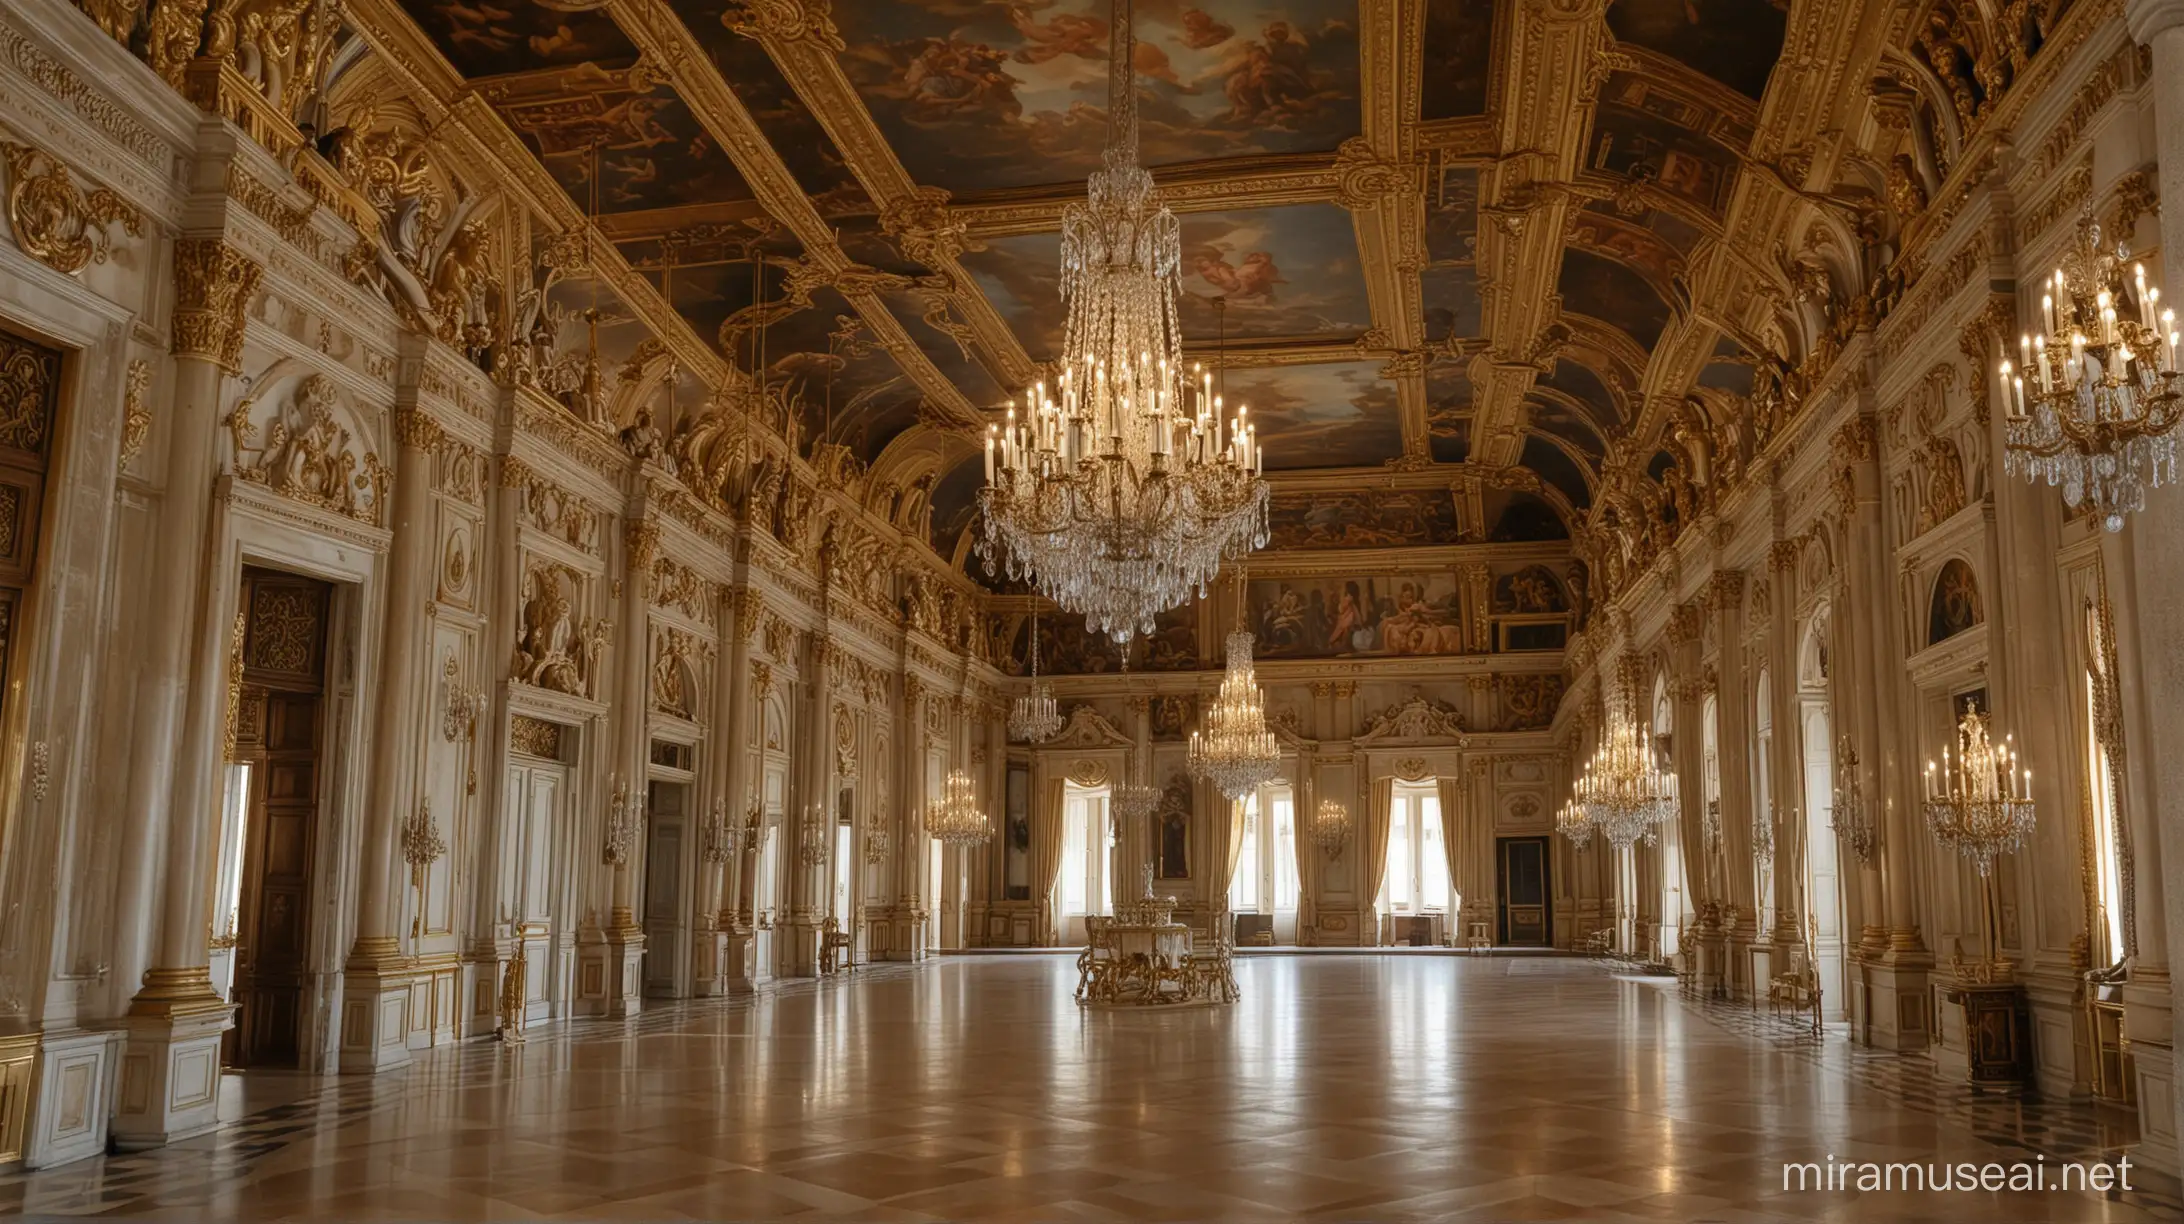 Royal palace interior